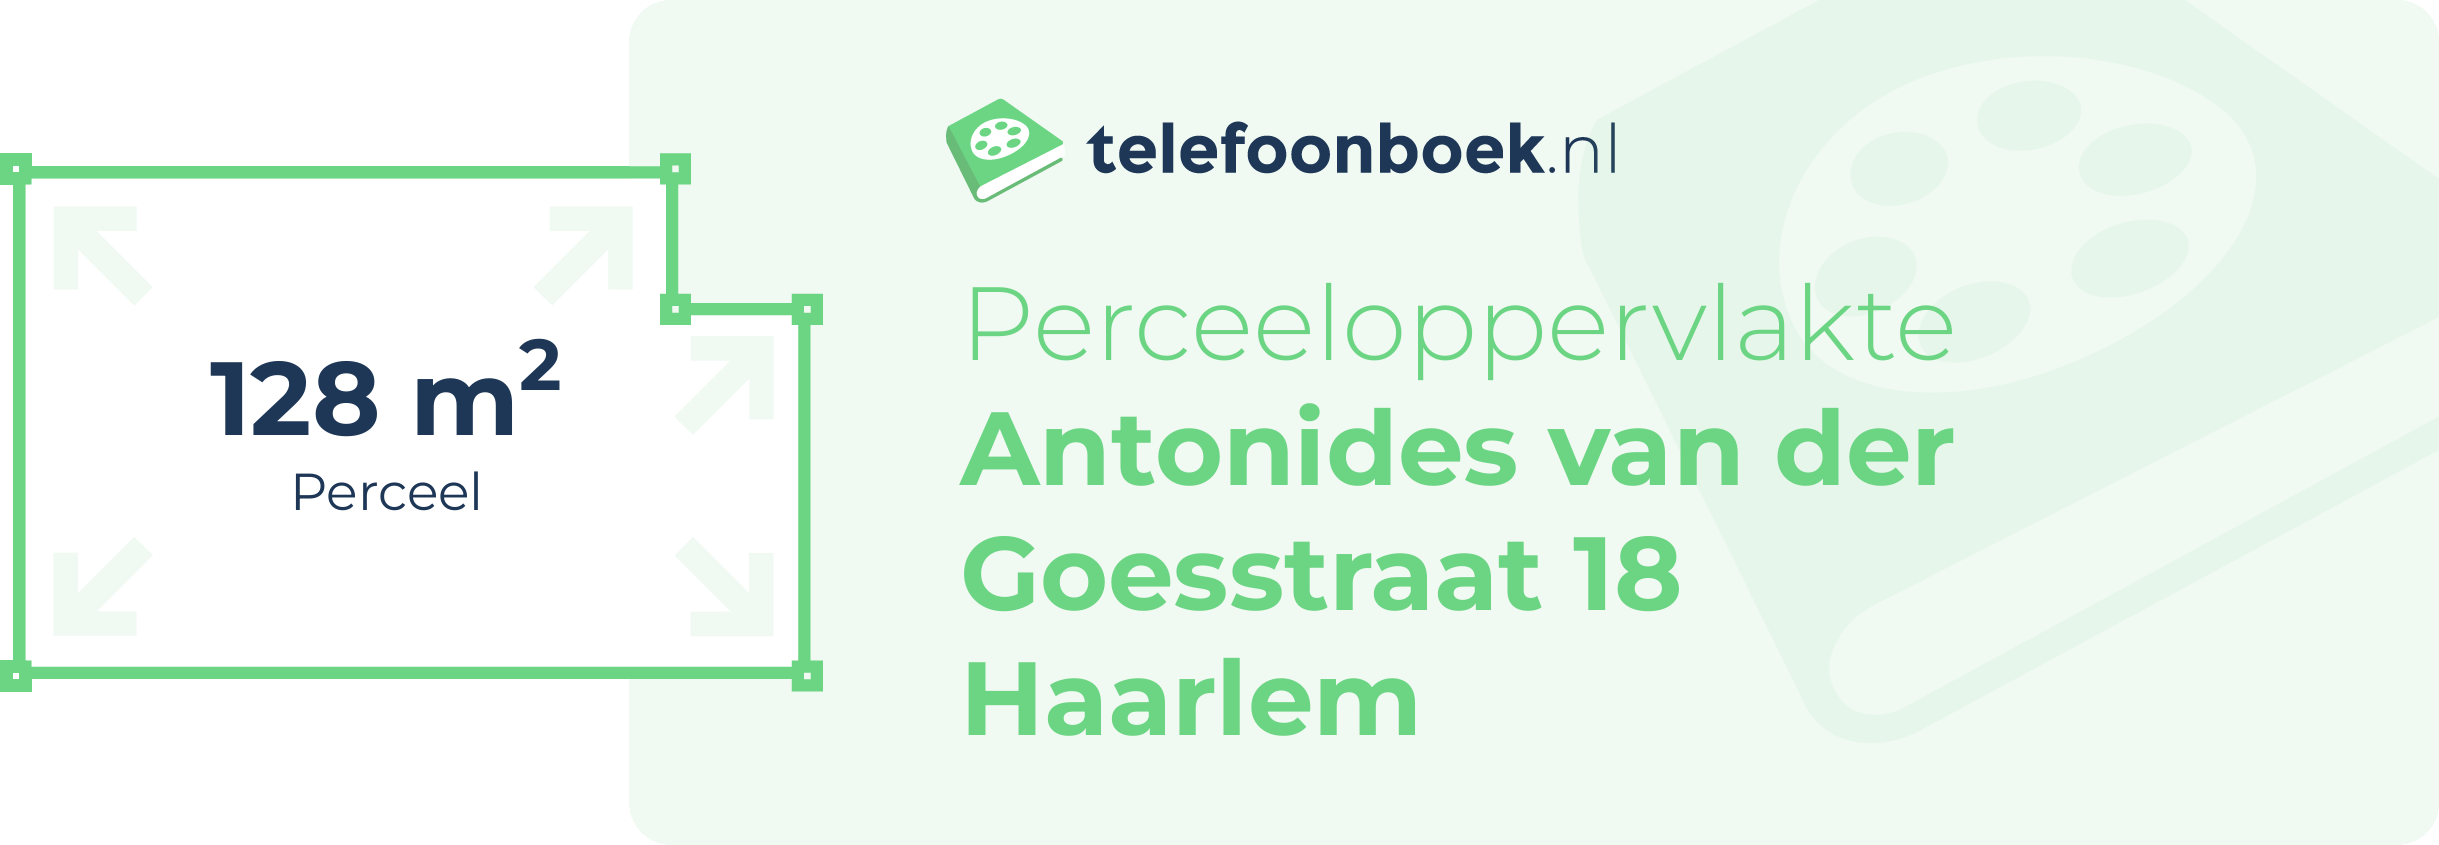 Perceeloppervlakte Antonides Van Der Goesstraat 18 Haarlem